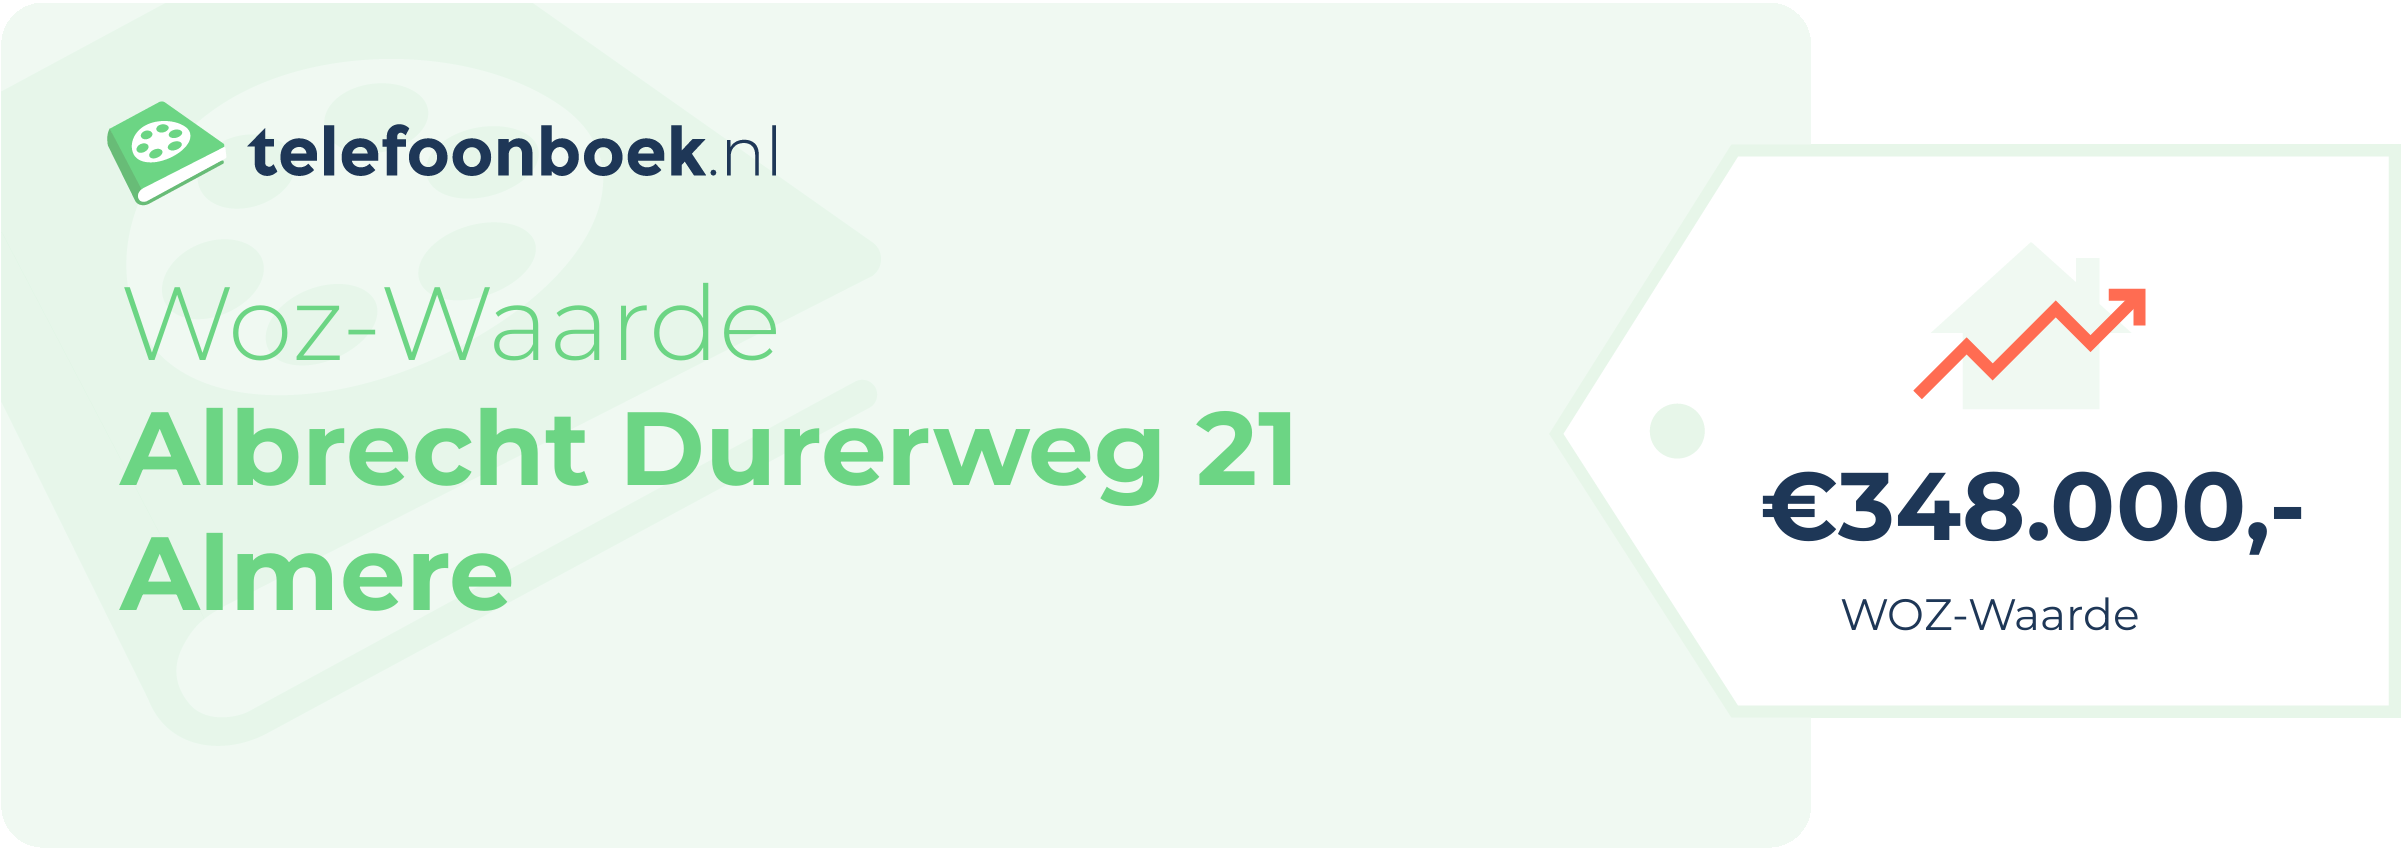 WOZ-waarde Albrecht Durerweg 21 Almere